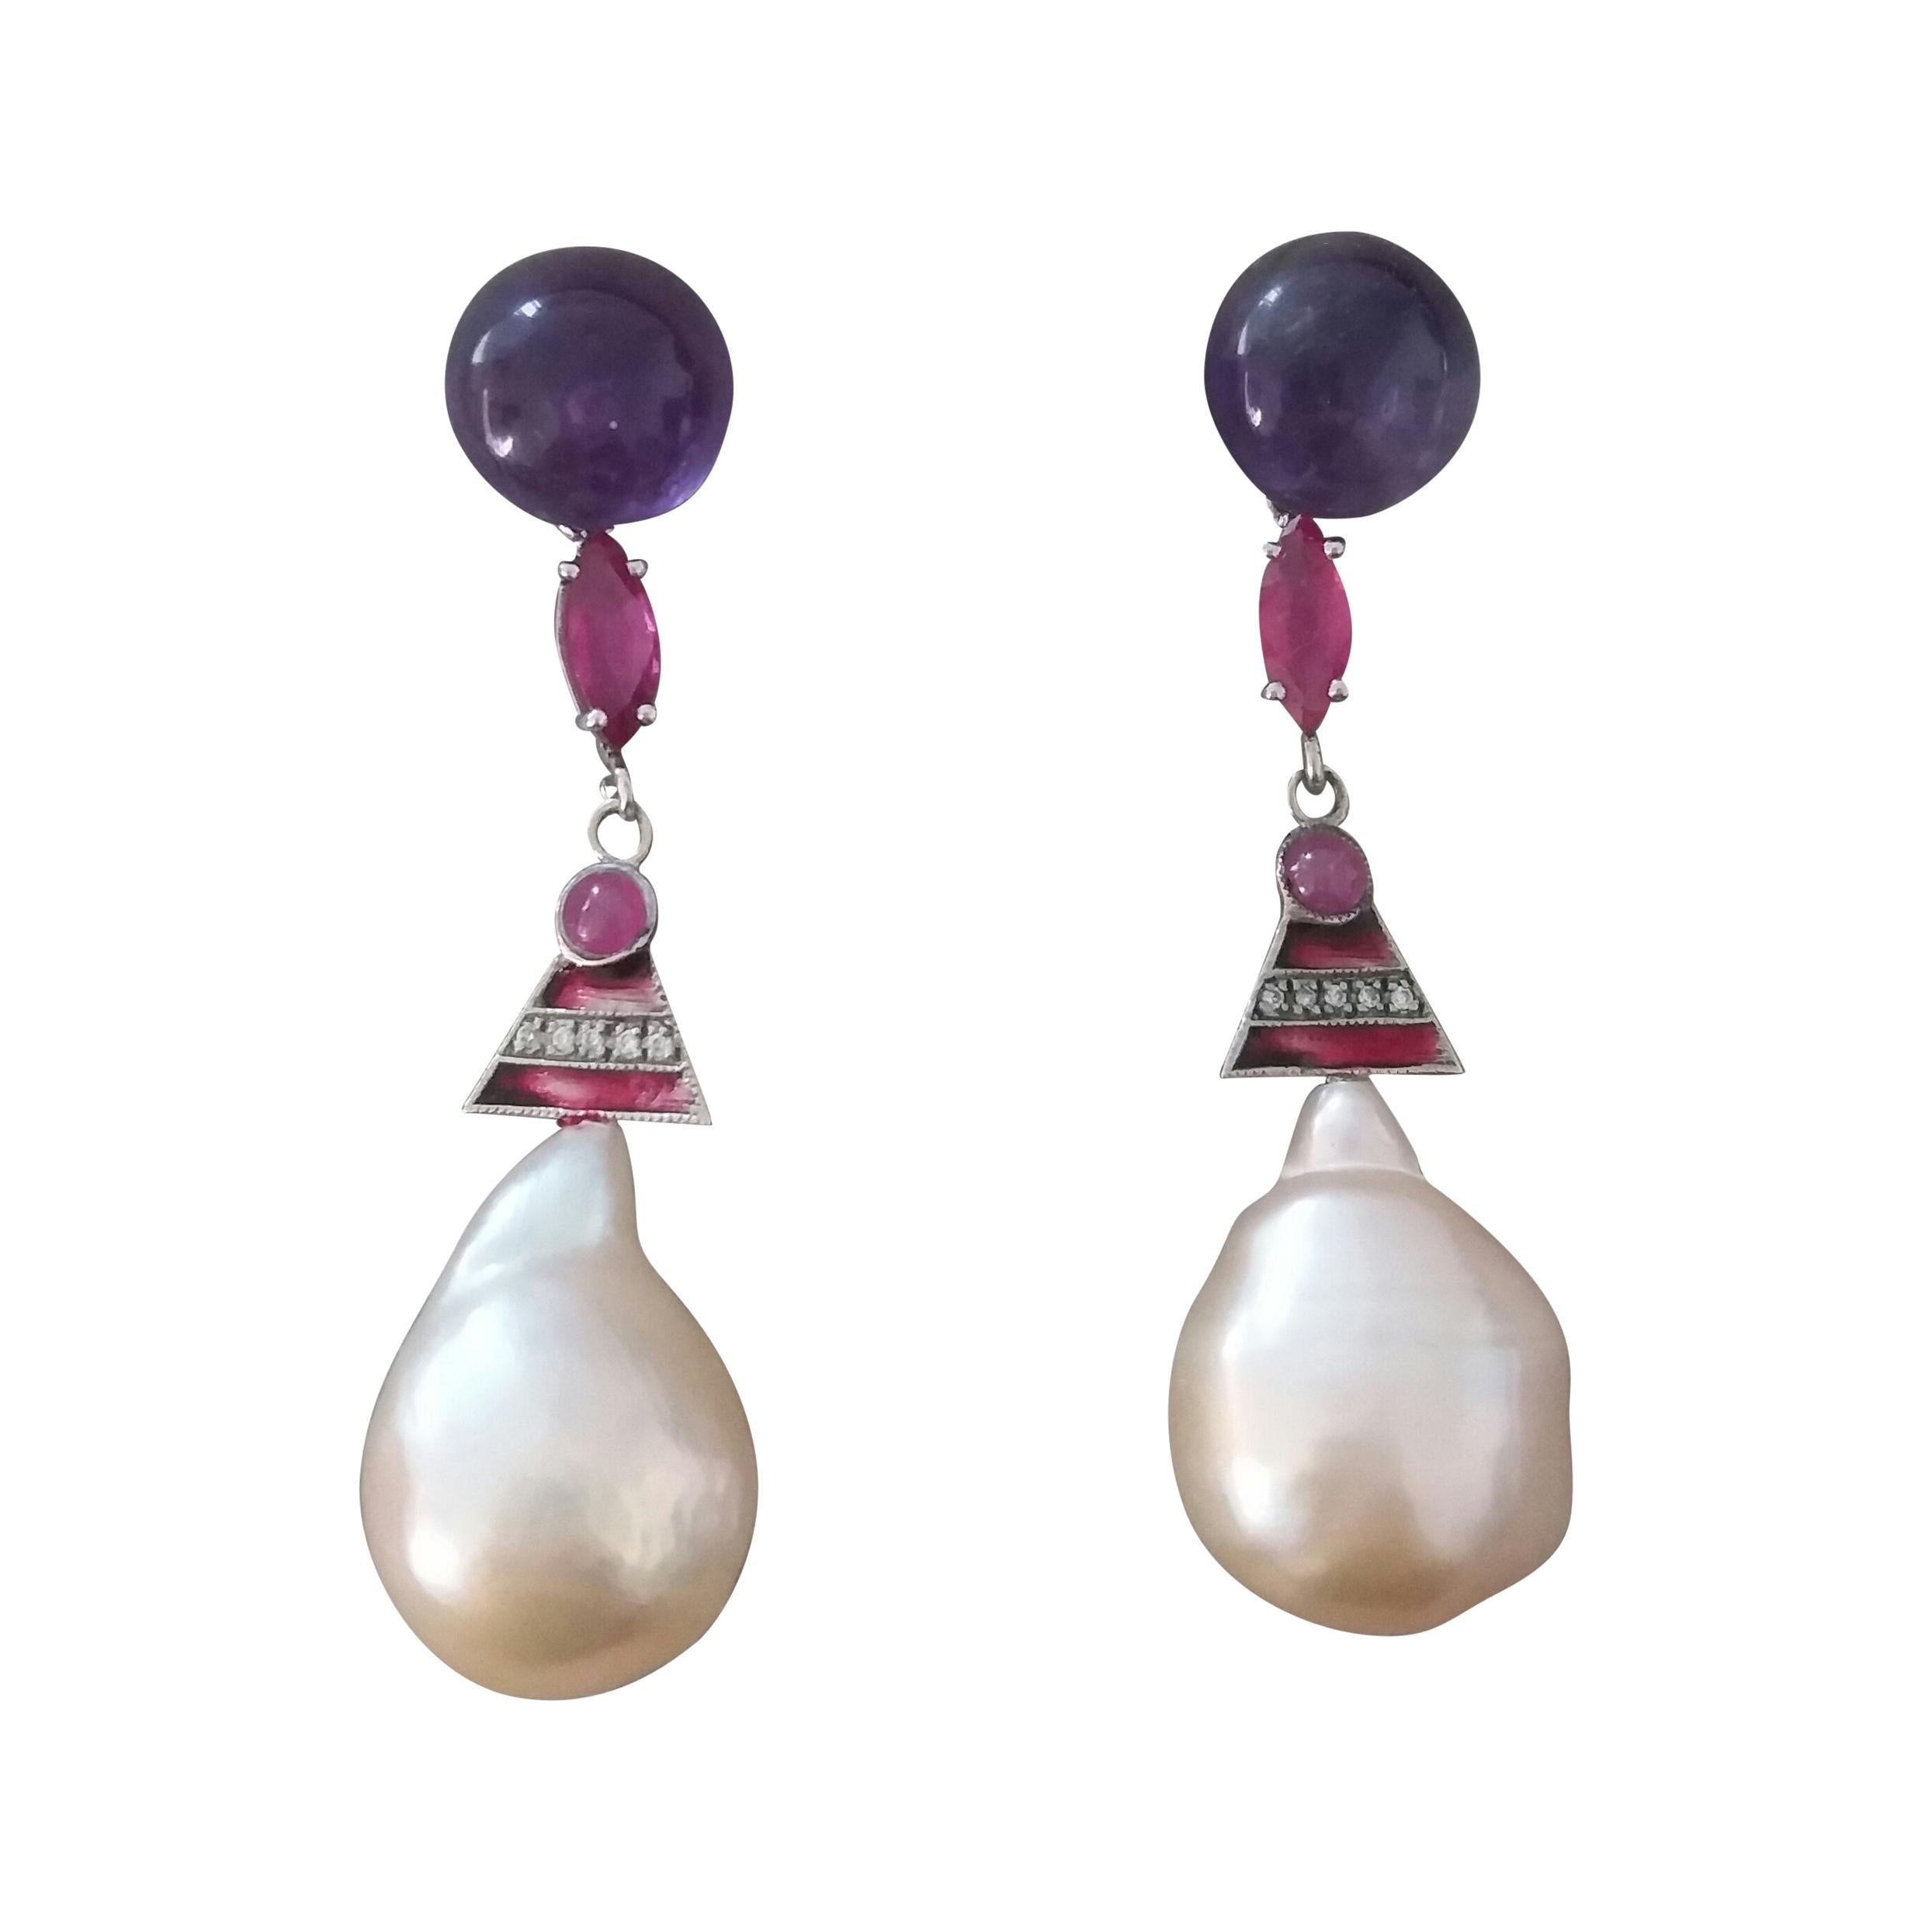 Boucles d'oreilles de style Art déco en or, améthyste, rubis, émaux, diamants et perles baroques crème